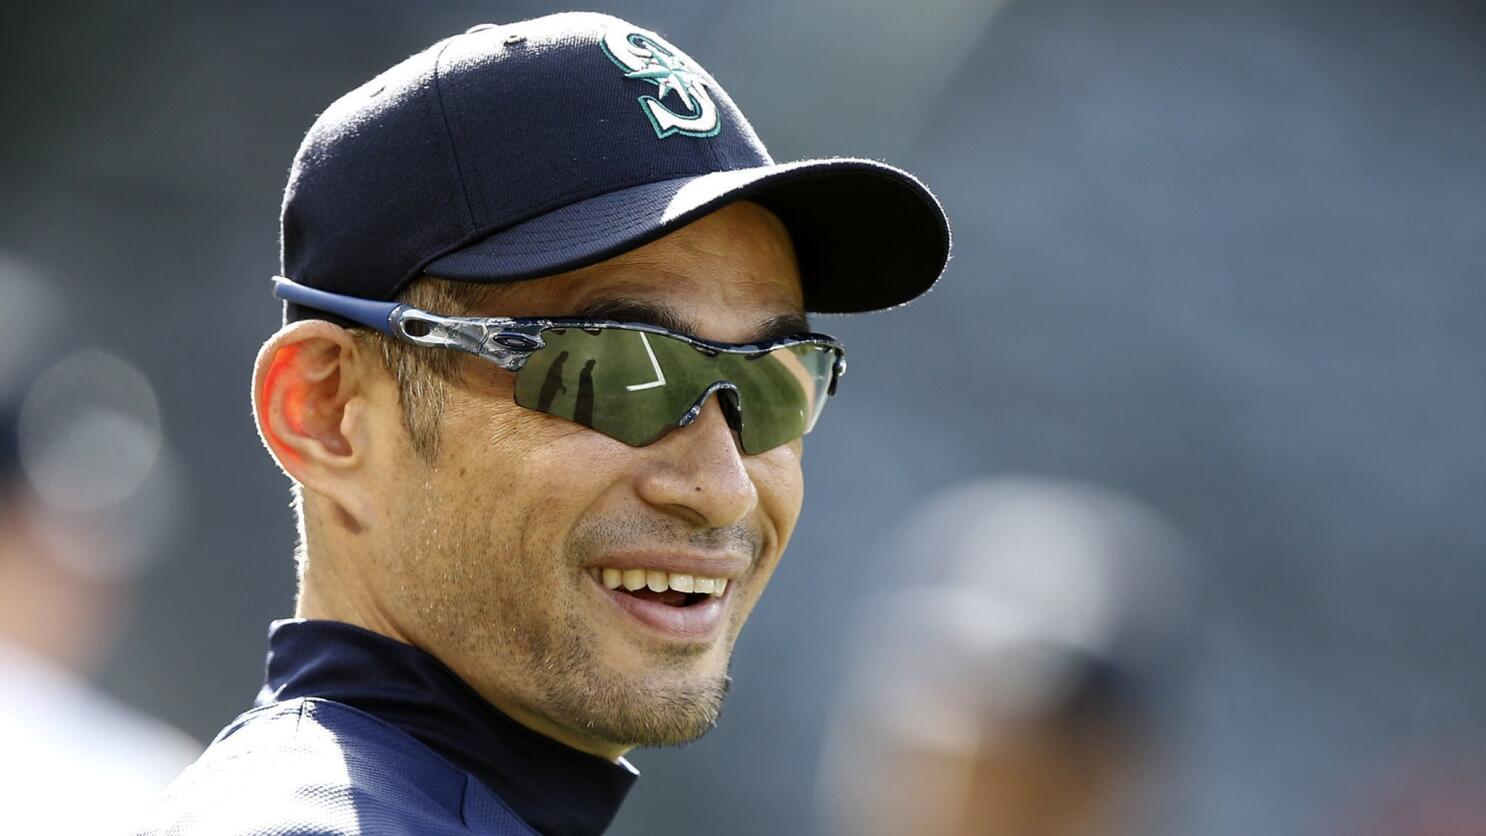 ichiro suzuki sunglasses